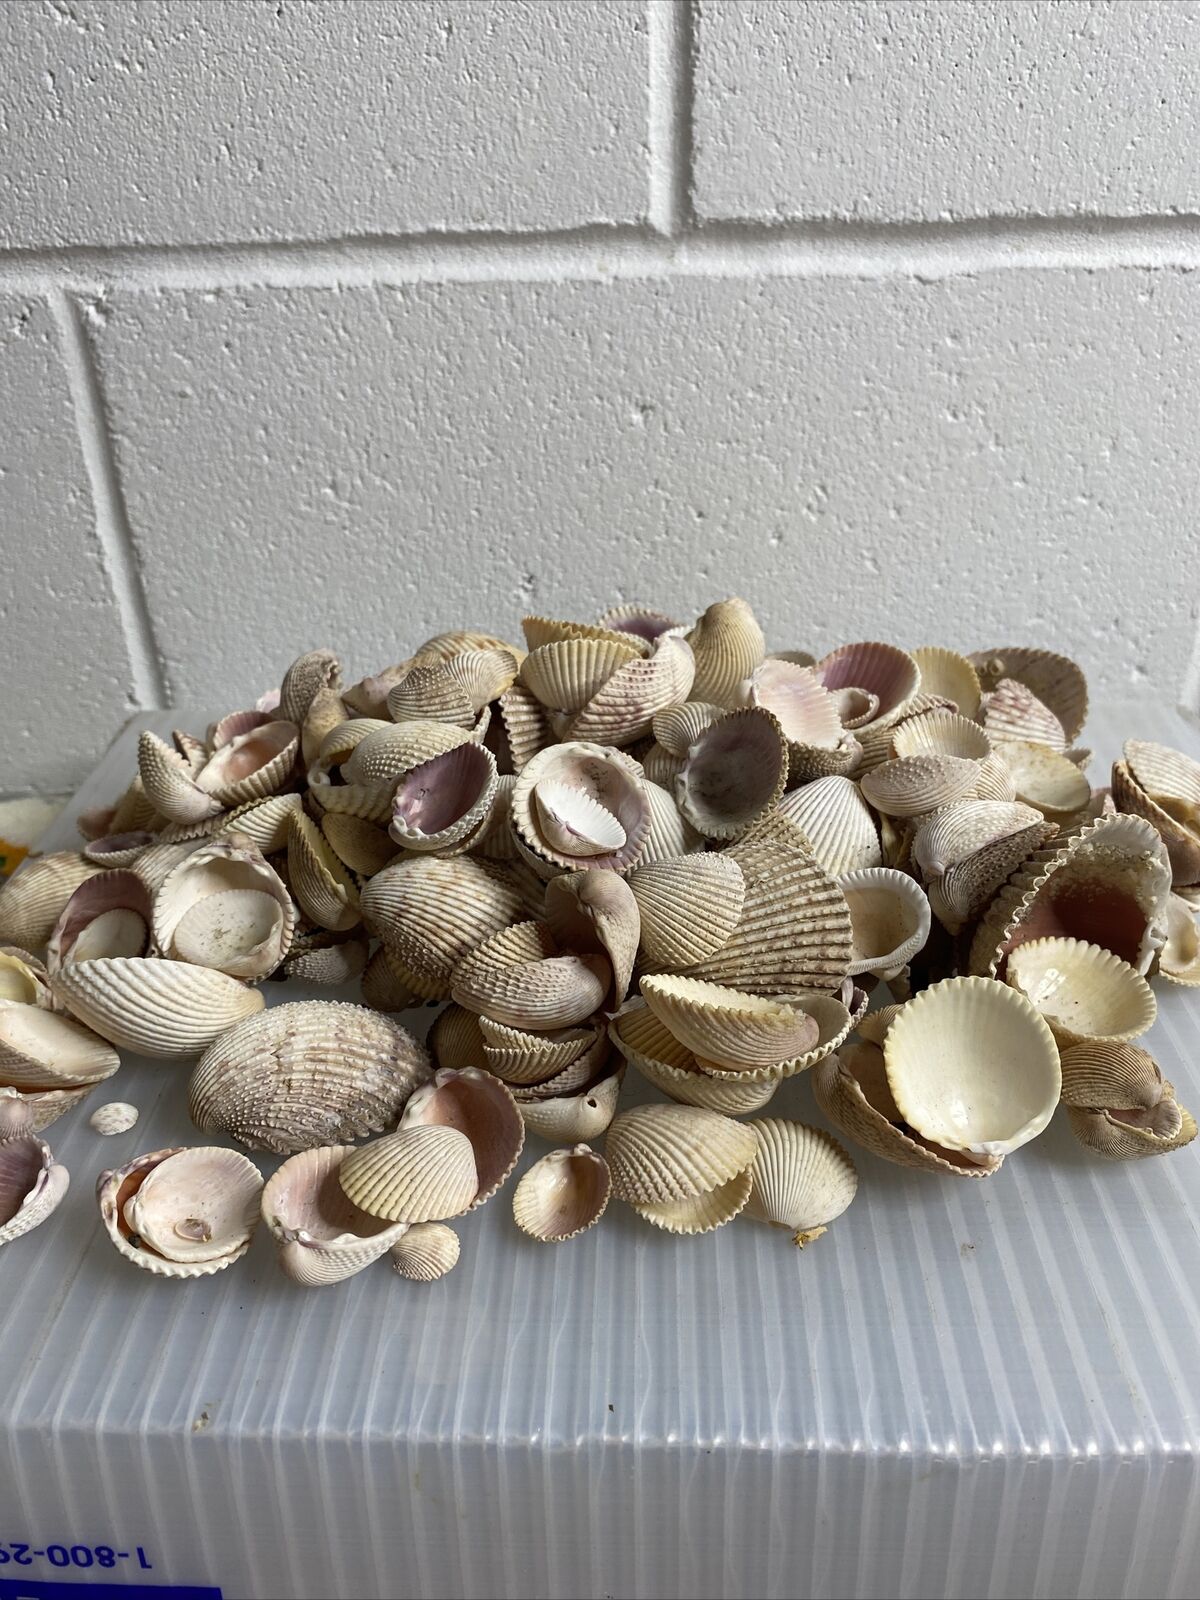 2.5lbs Of Handpicked Seashells - Usa & Mexico